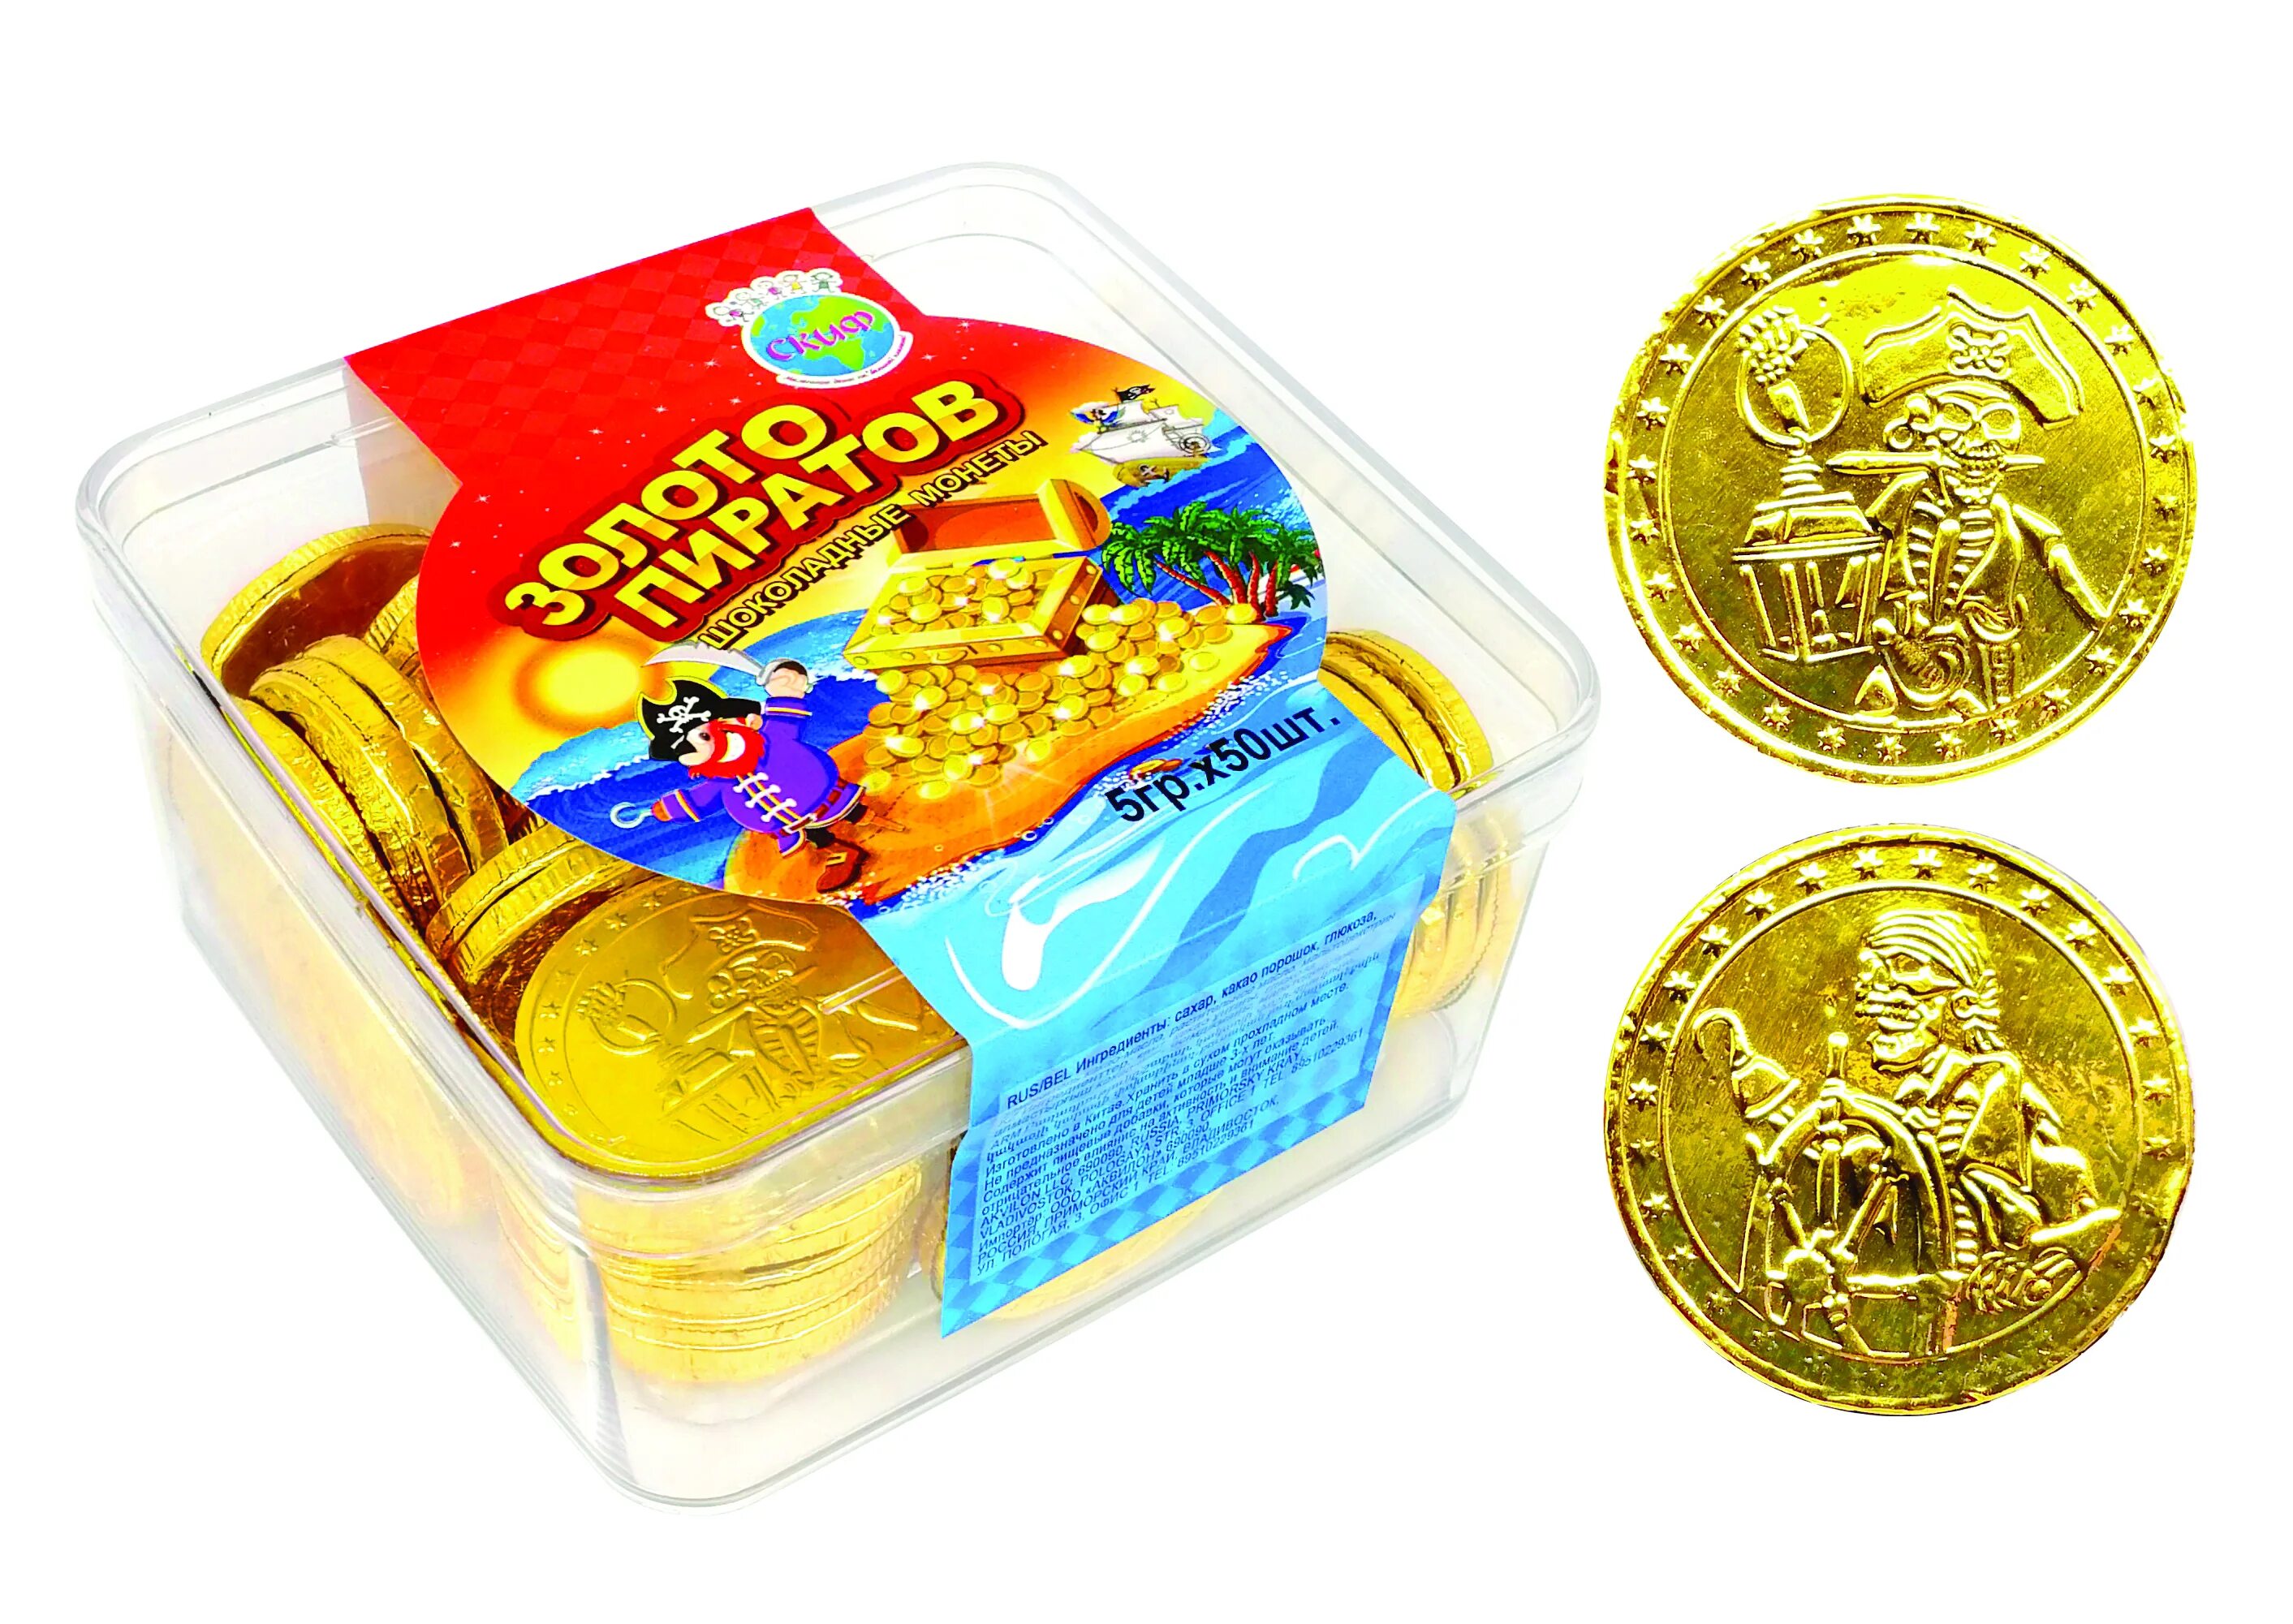 Шоколадные монеты золото пиратов Скиф. Шоколадные монеты золото пиратов 5 гр. Монетный двор шоколад золото пиратов 150гр. Конфеты золотые монеты.